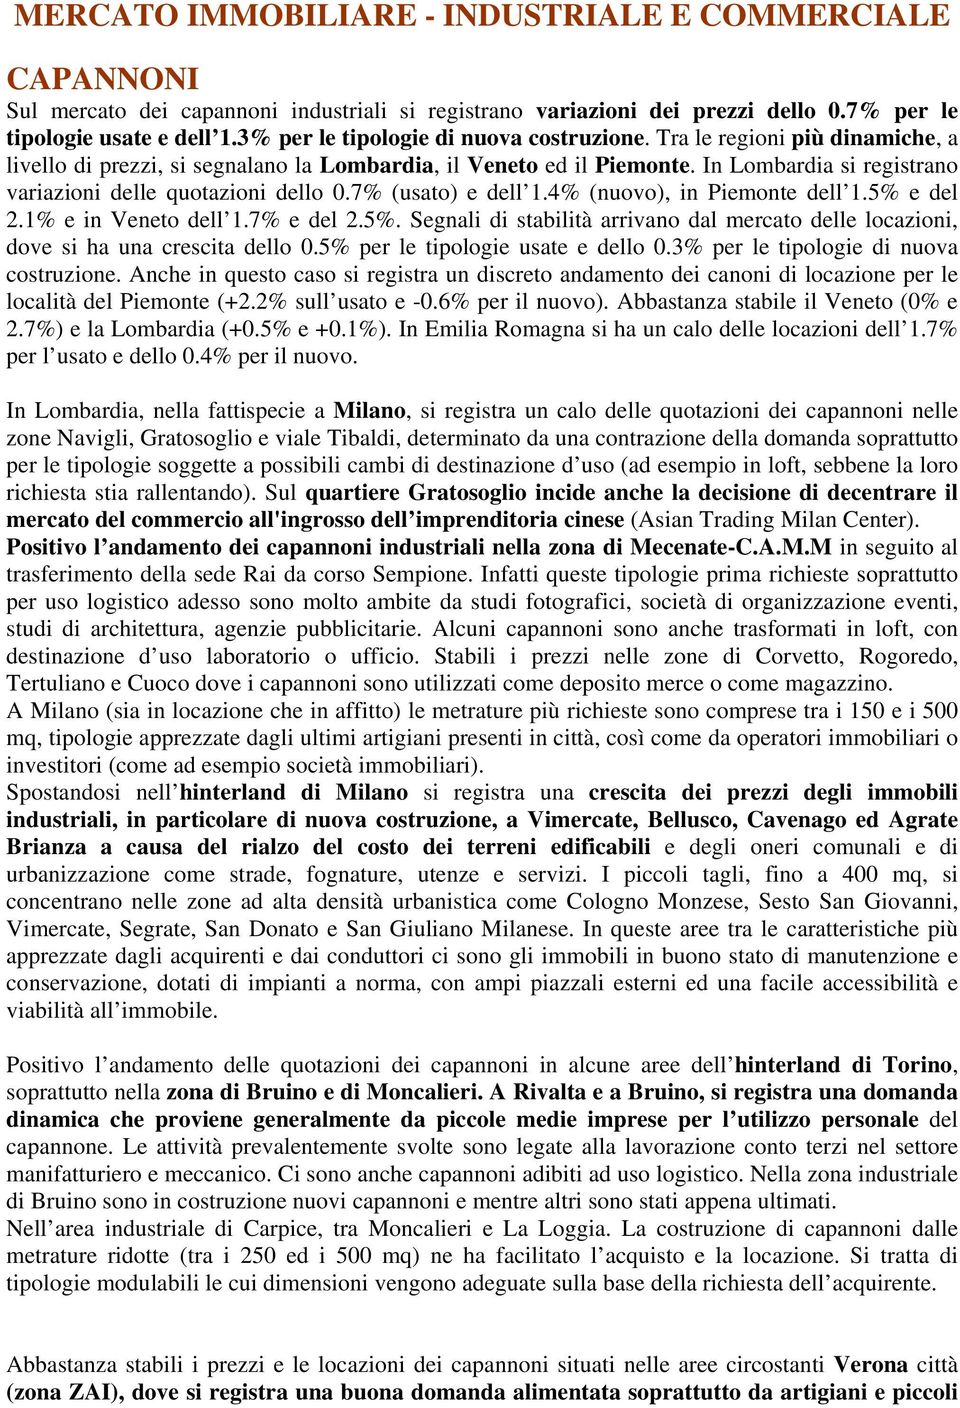 In Lombardia si registrano variazioni delle quotazioni dello 0.7% (usato) e dell 1.4% (nuovo), in Piemonte dell 1.5% 